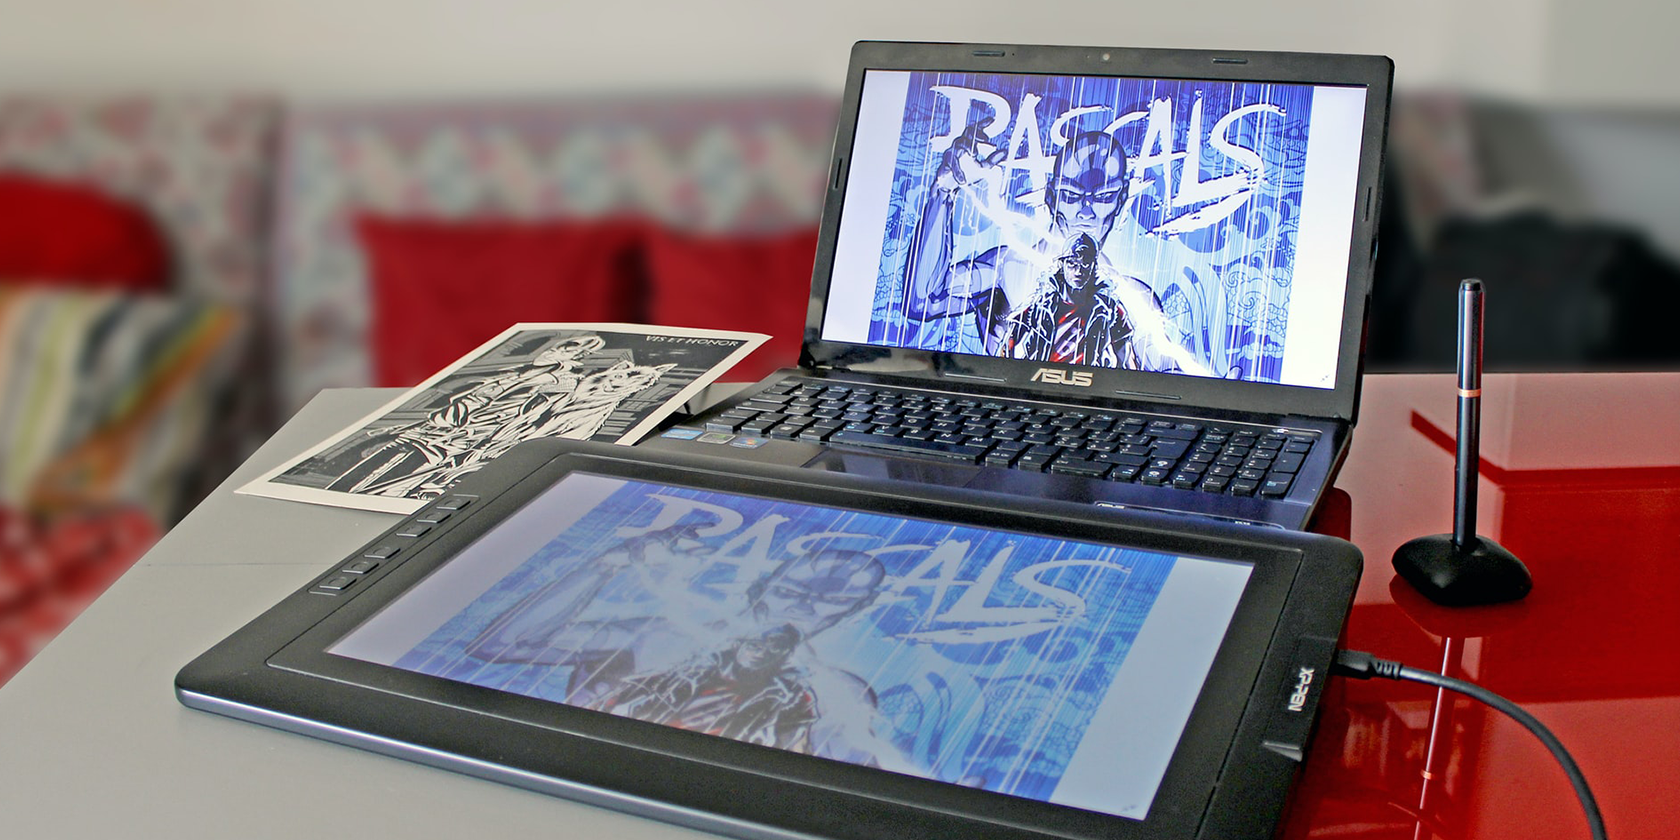 digital painting on asus laptop and tablet - 8 cose che dovresti sapere prima di acquistare una tavoletta grafica